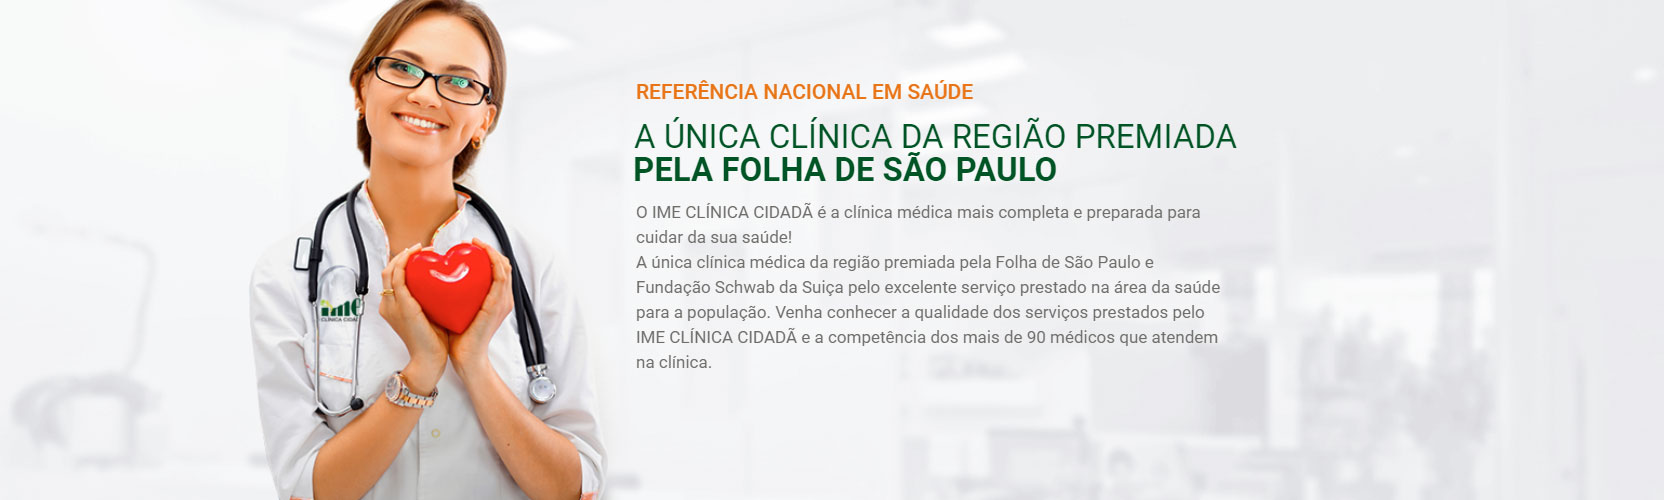 Premiada pela Folha de São Paulo - IME - Clínica Cidadã